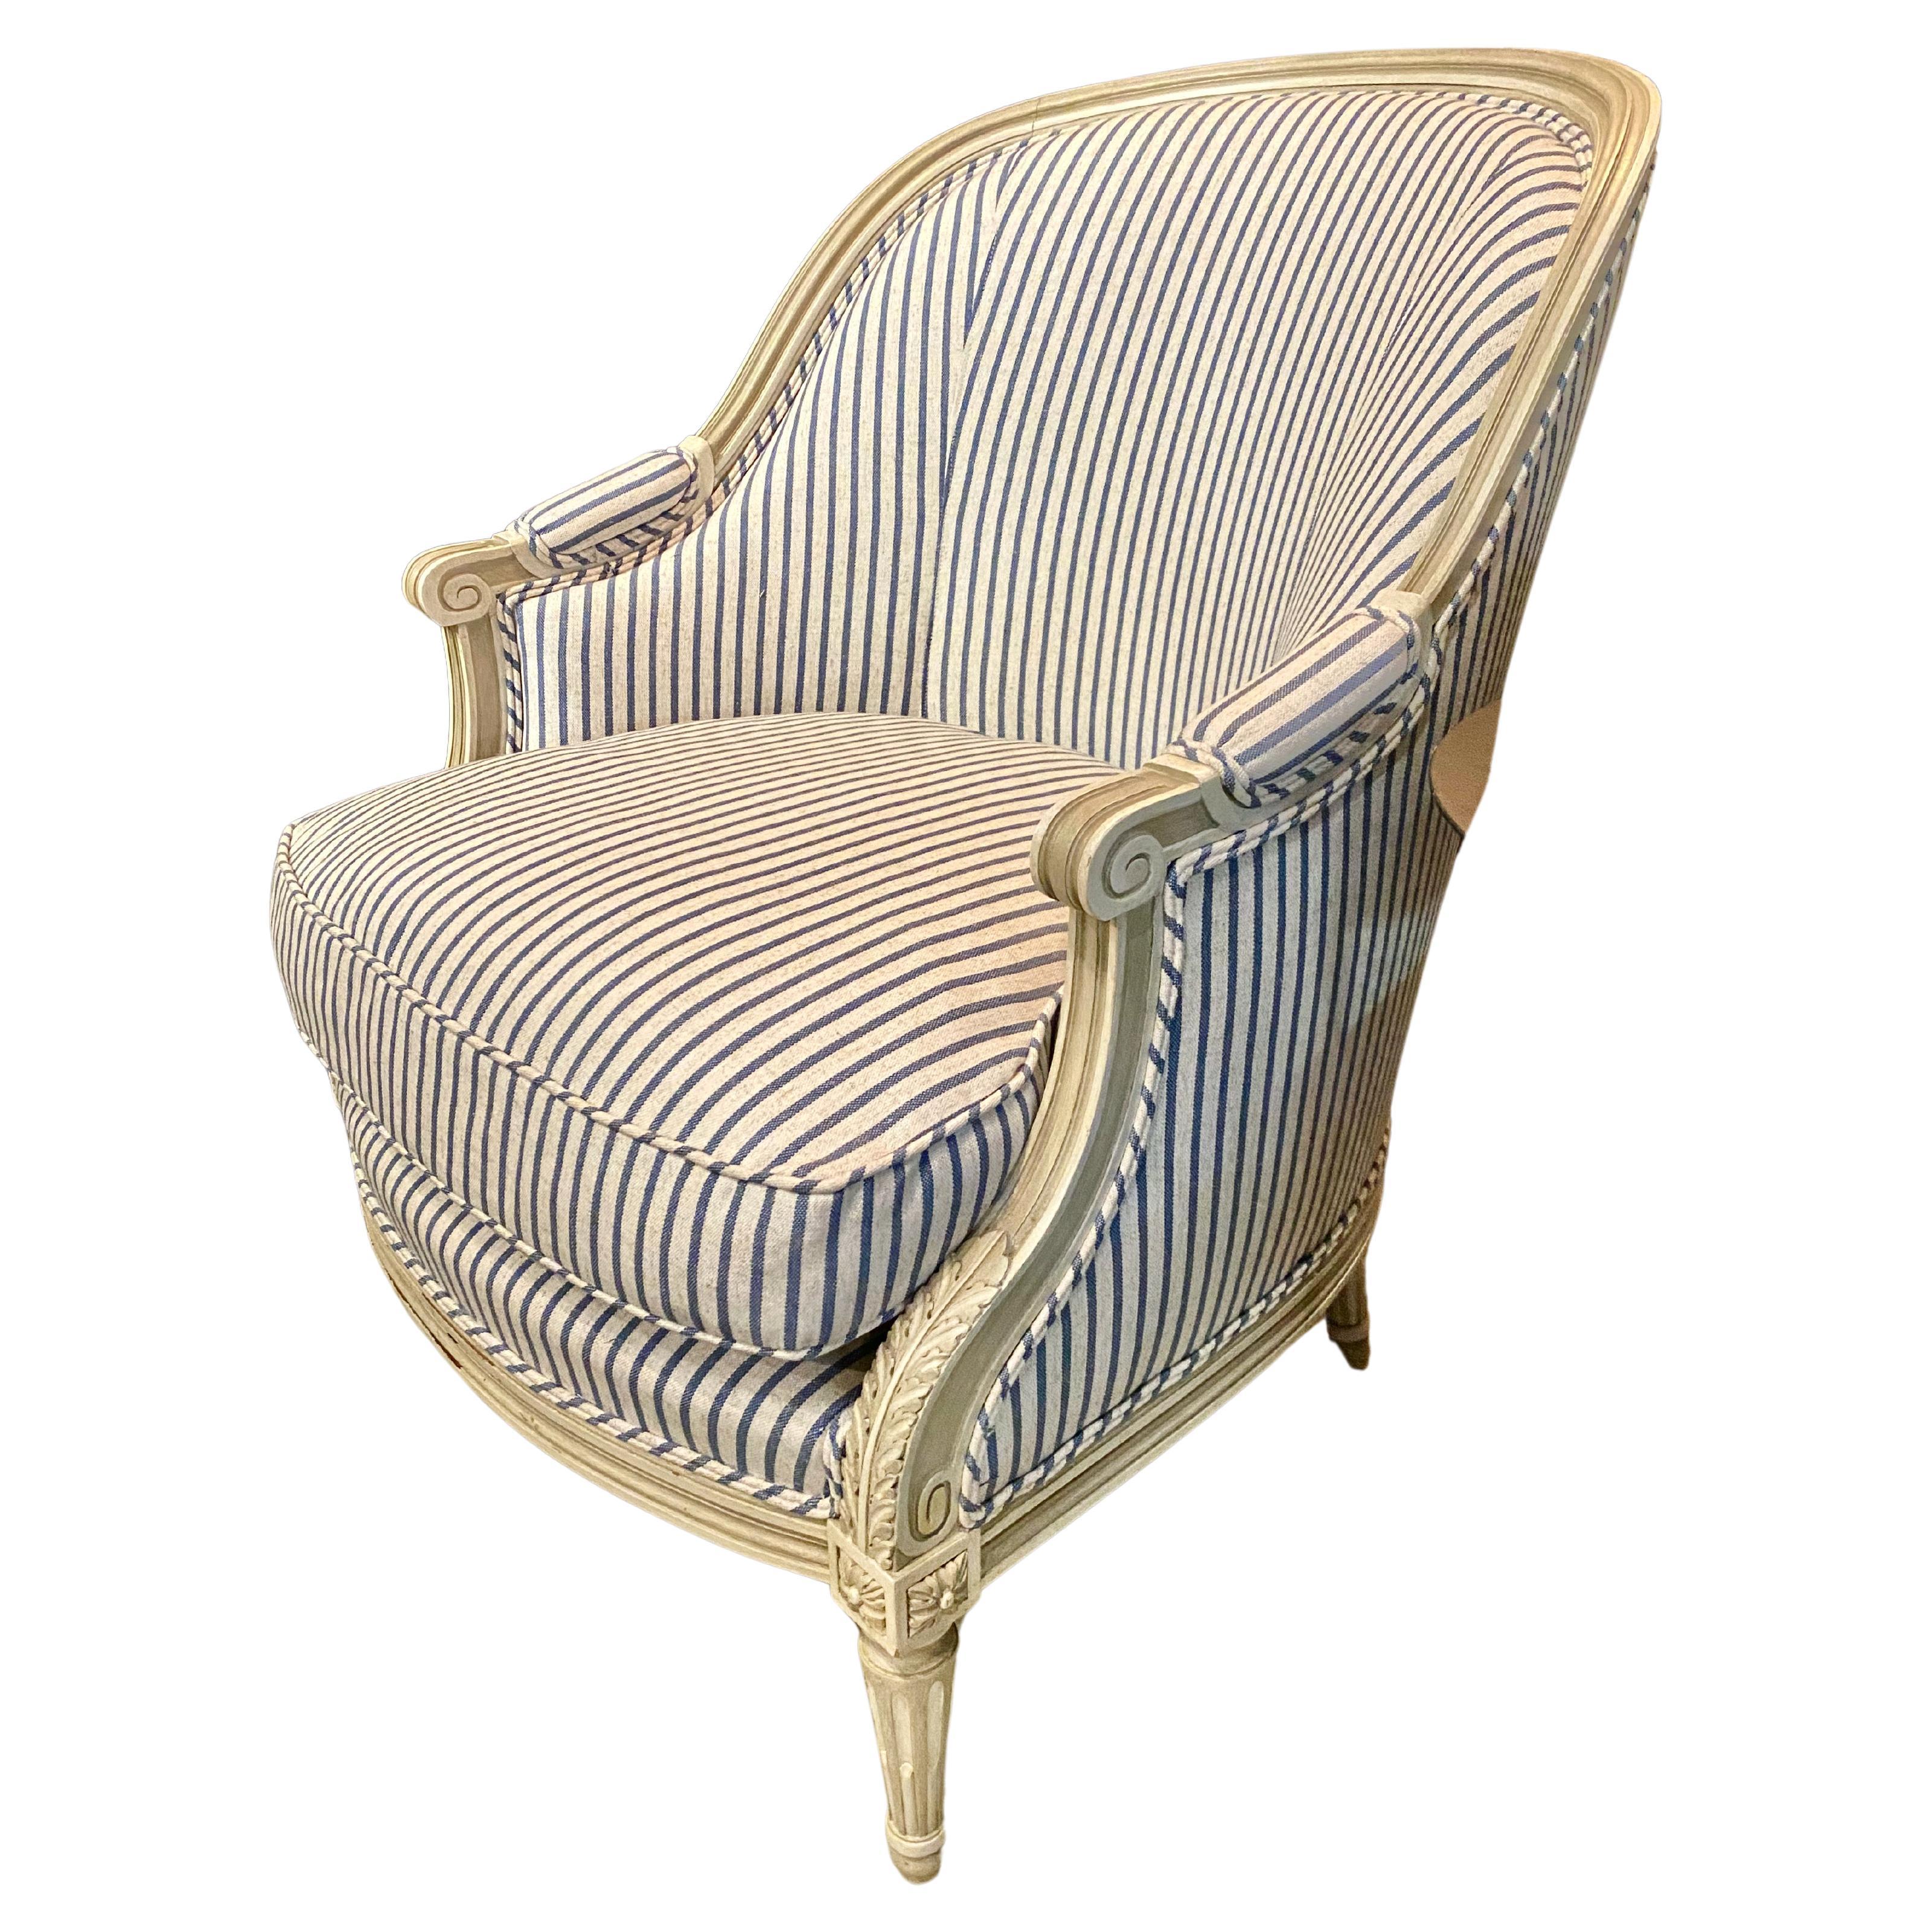 Il s'agit d'une paire exceptionnelle de bergères à dossier en tonneau peintes de style Louis XVI, datant de la première moitié du XXe siècle. Les chaises à dossier en forme de tonneau ou de baignoire sont la forme la plus recherchée de bergerie,